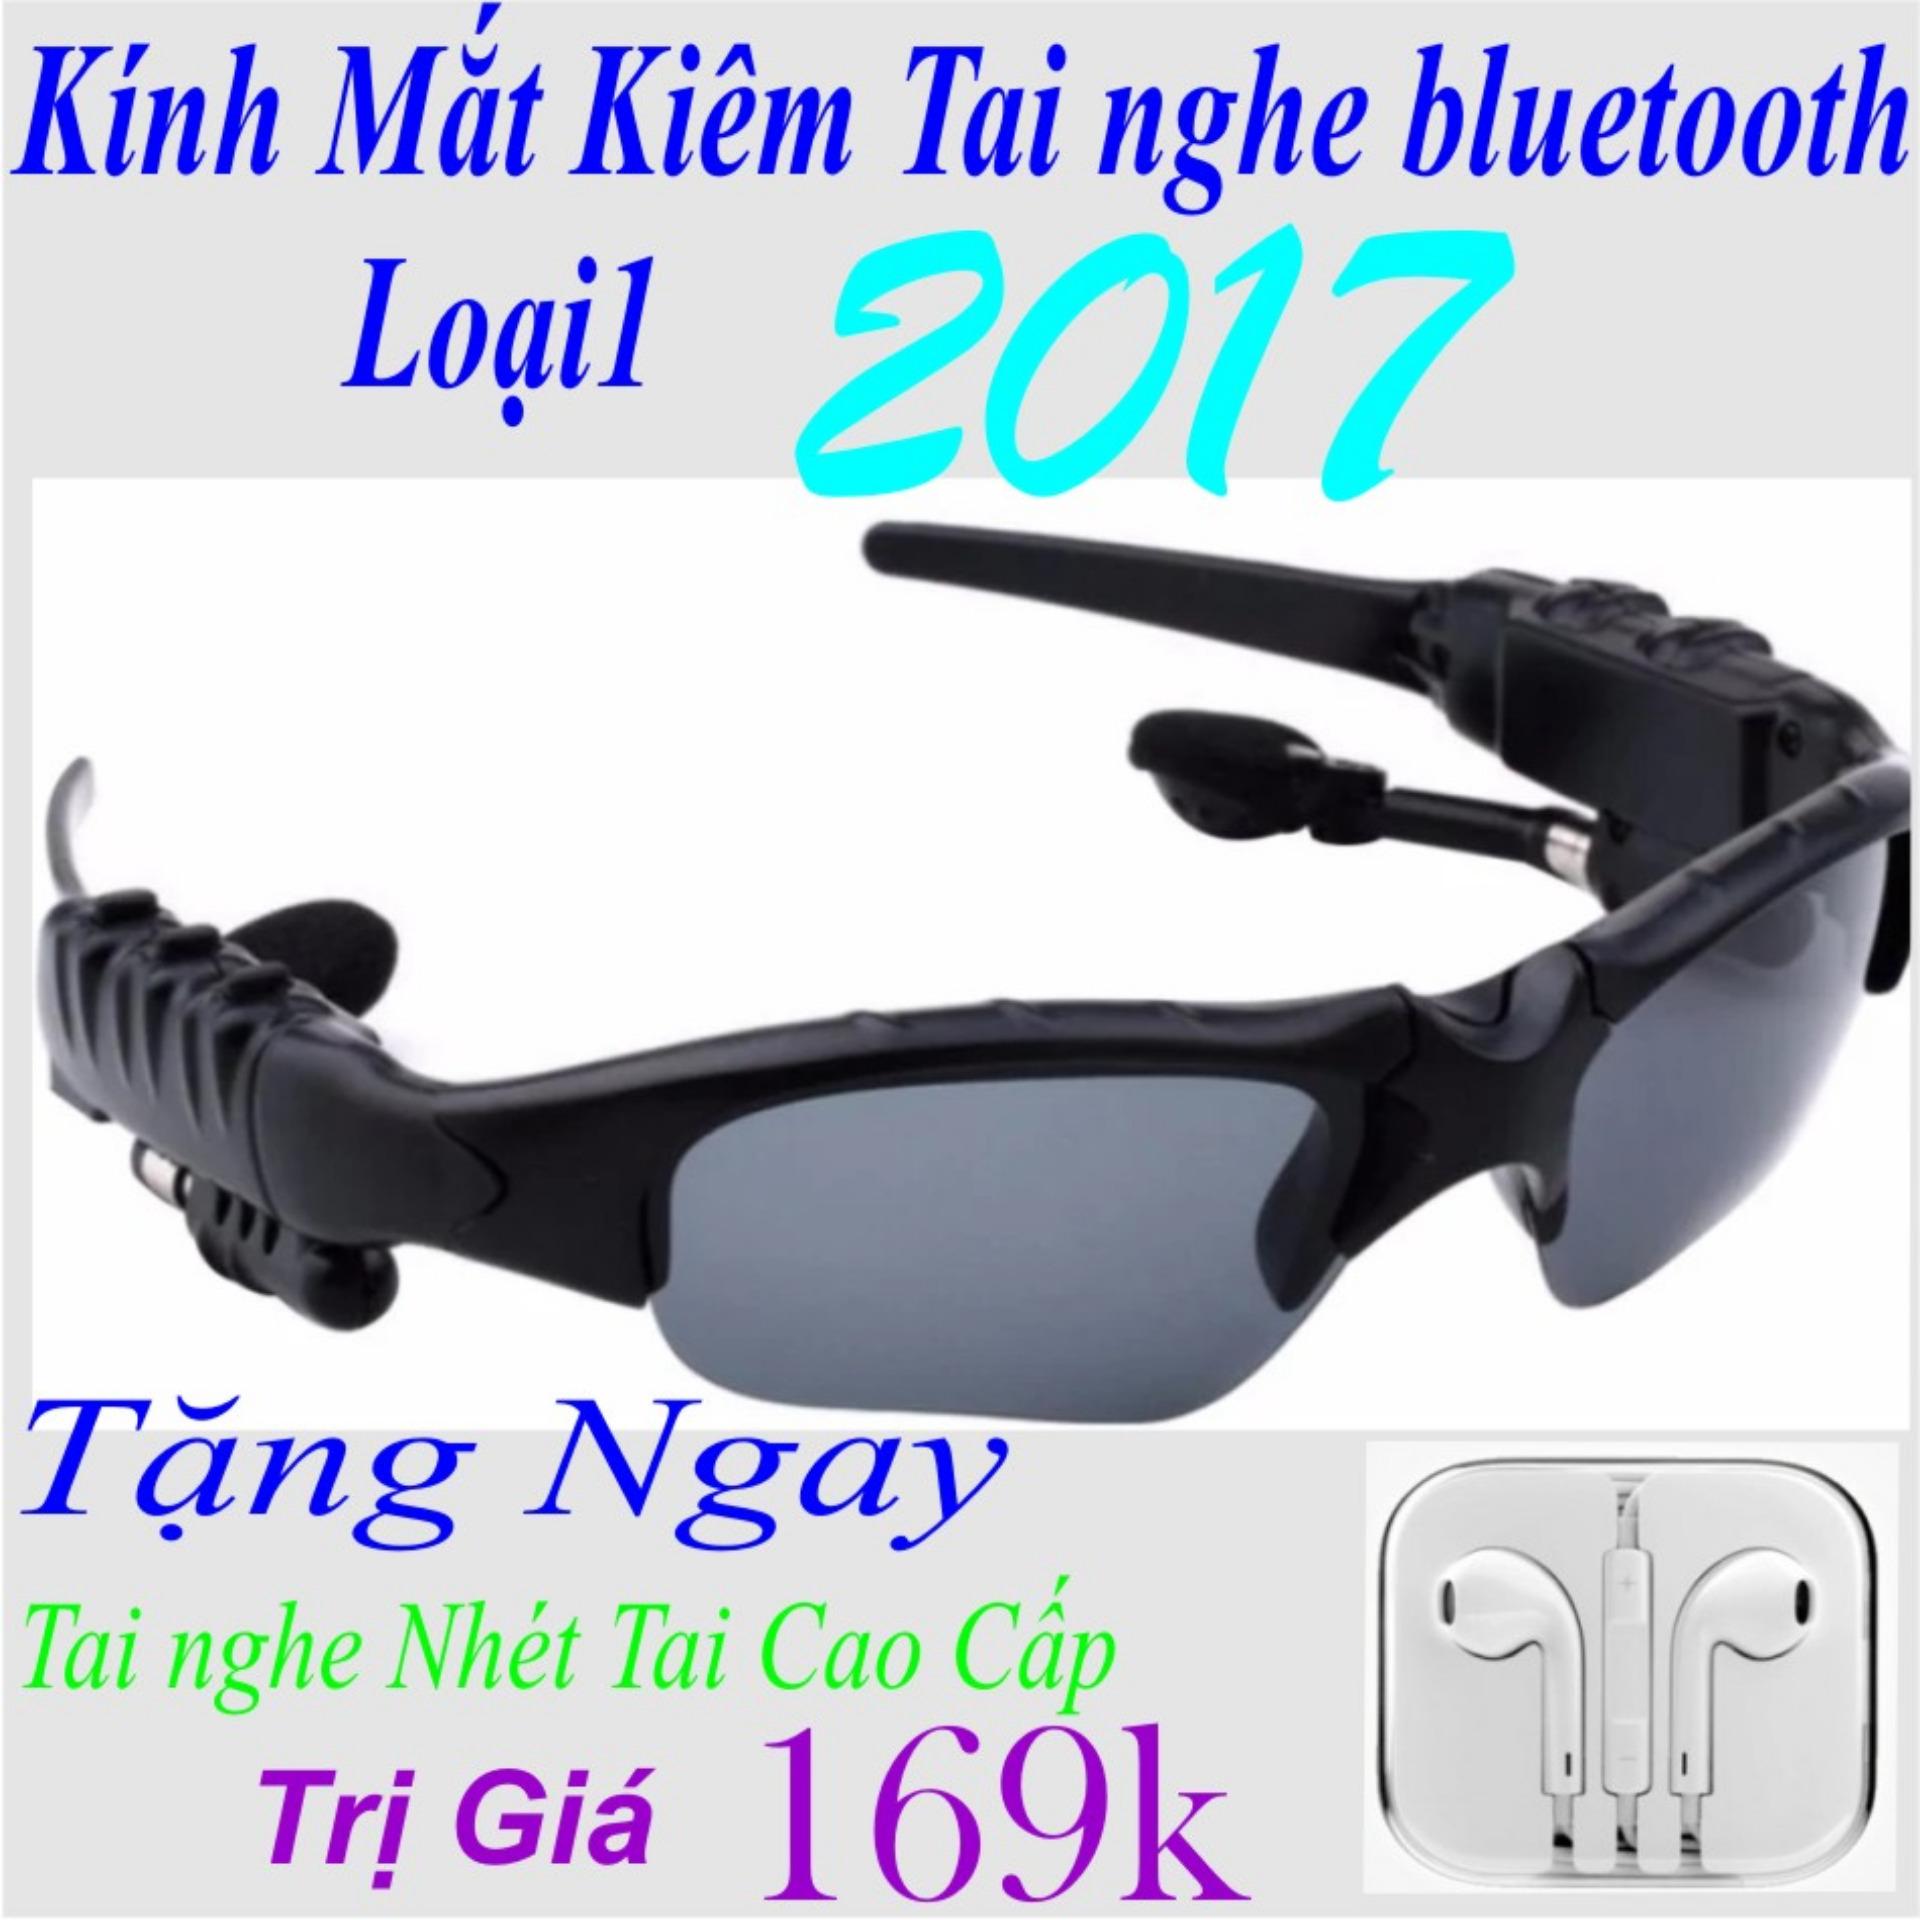 Kính mát sành điệu kiêm tai nghe Bluetooth ( Đen ) Loại 2017 Tặng Ngay Tai Nghe Nhét Tai Trị...